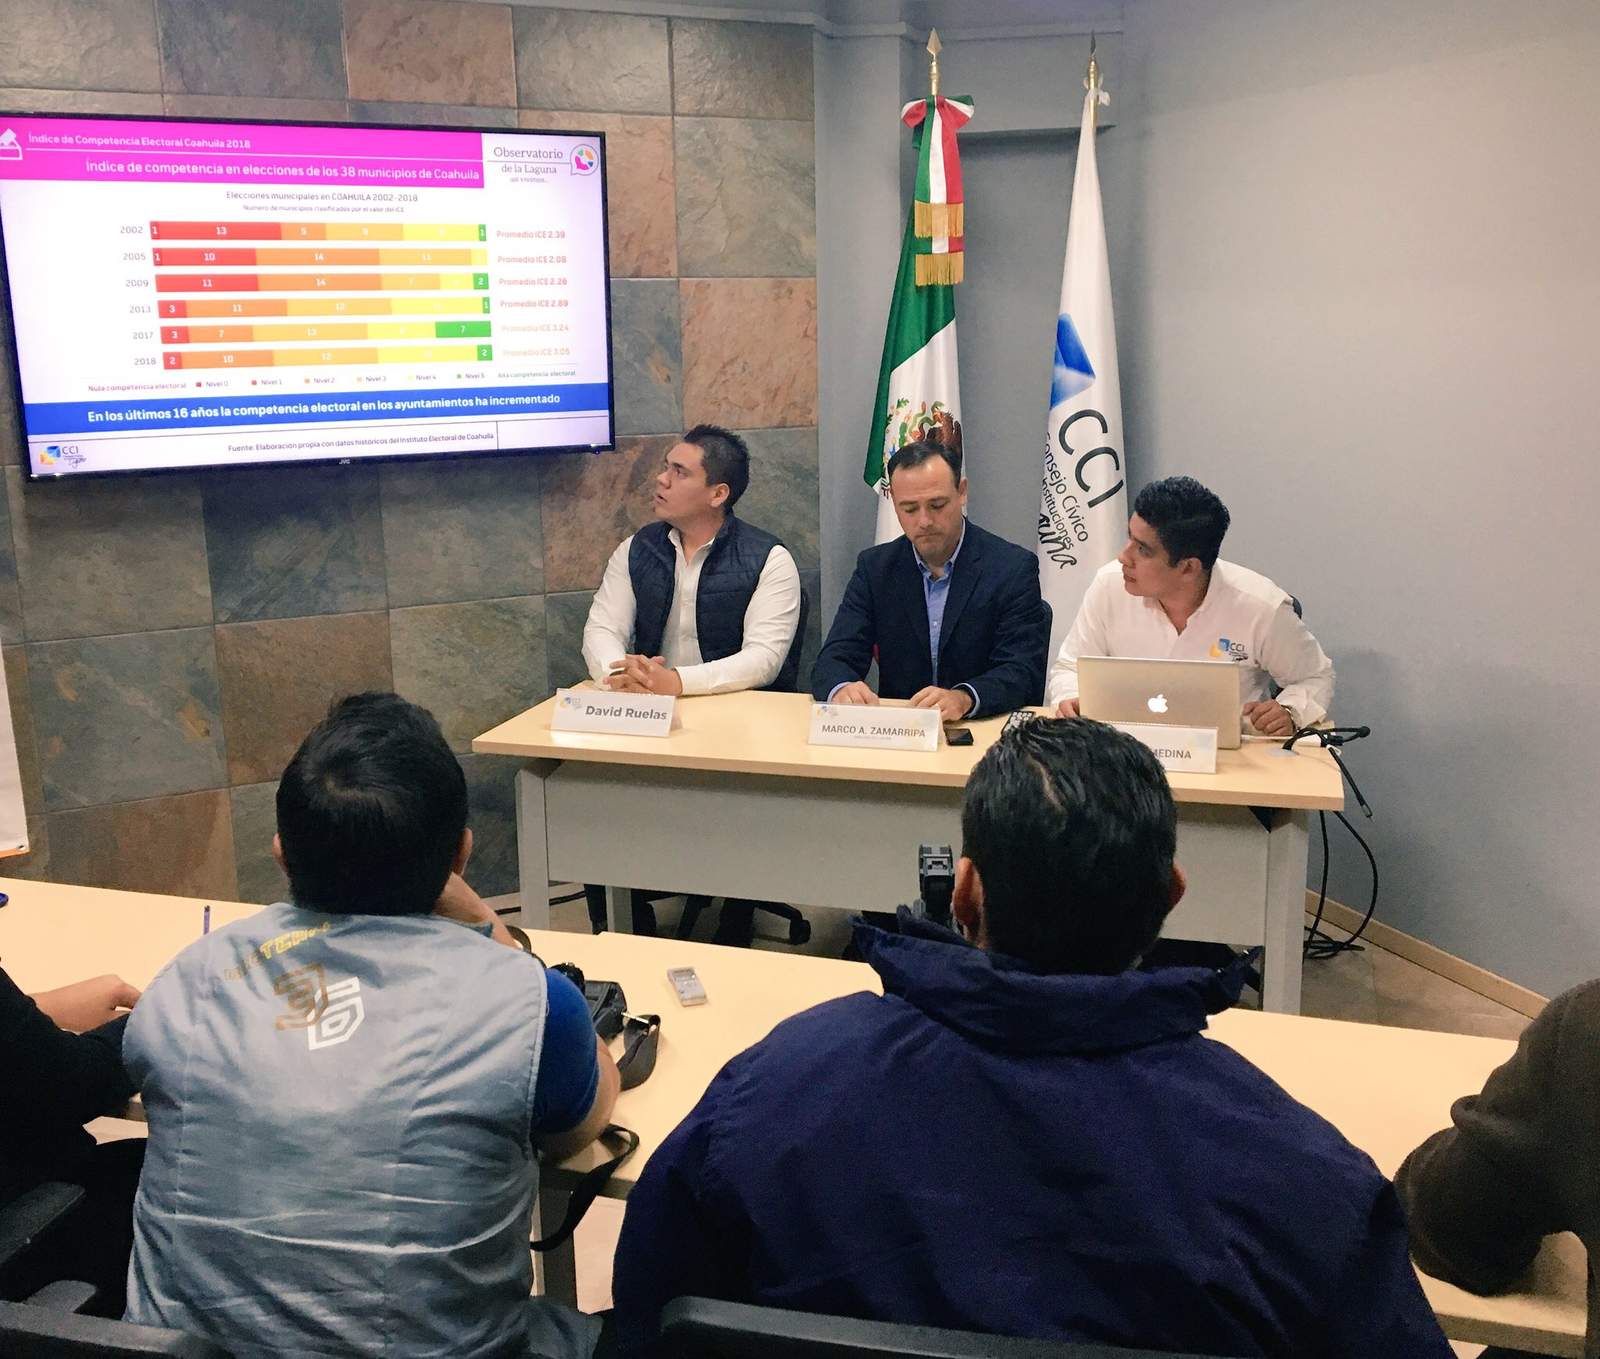  Torreón presenta una alta competencia electoral, con un índice de 5. (EL SIGLO DE TORREÓN)